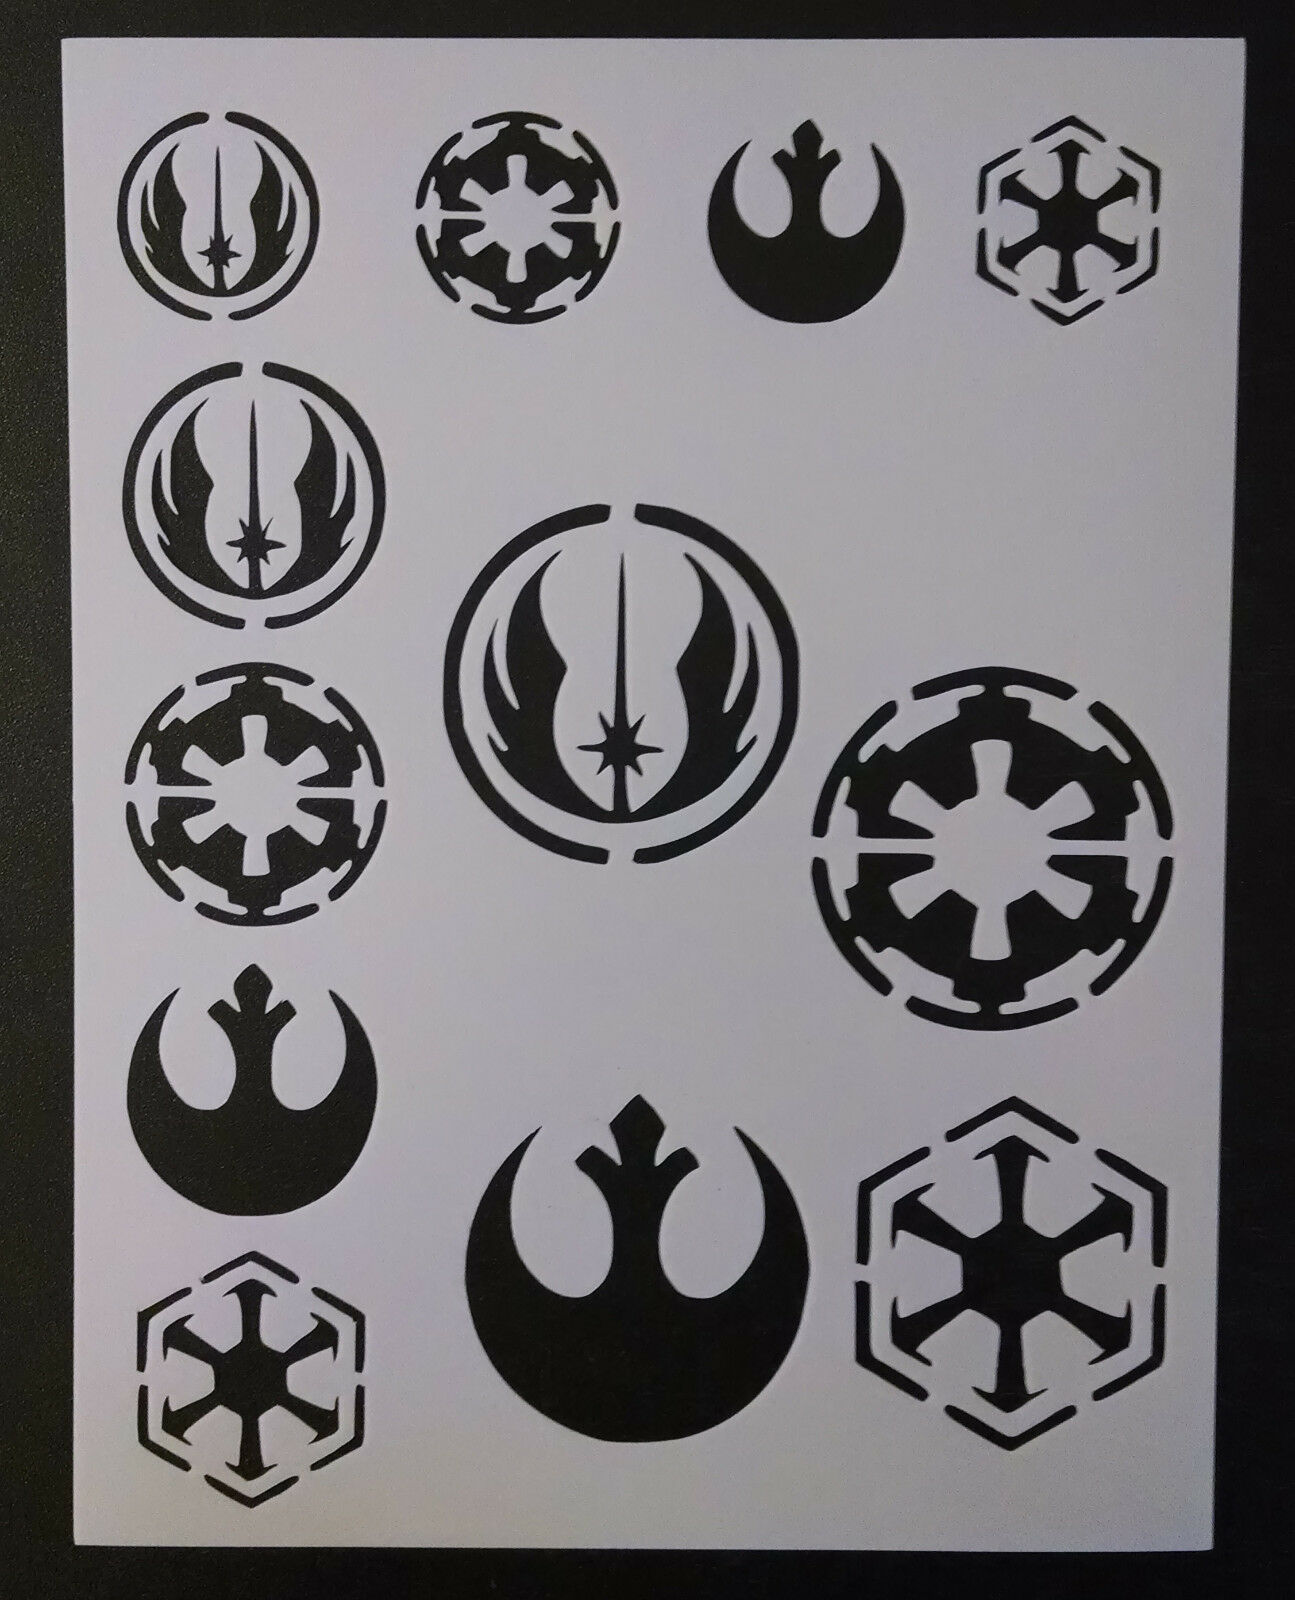 Star Wars Rebel Empire Sith Jedi Logo Seal 8.5" X 11" Stencil Fast Free Shipping